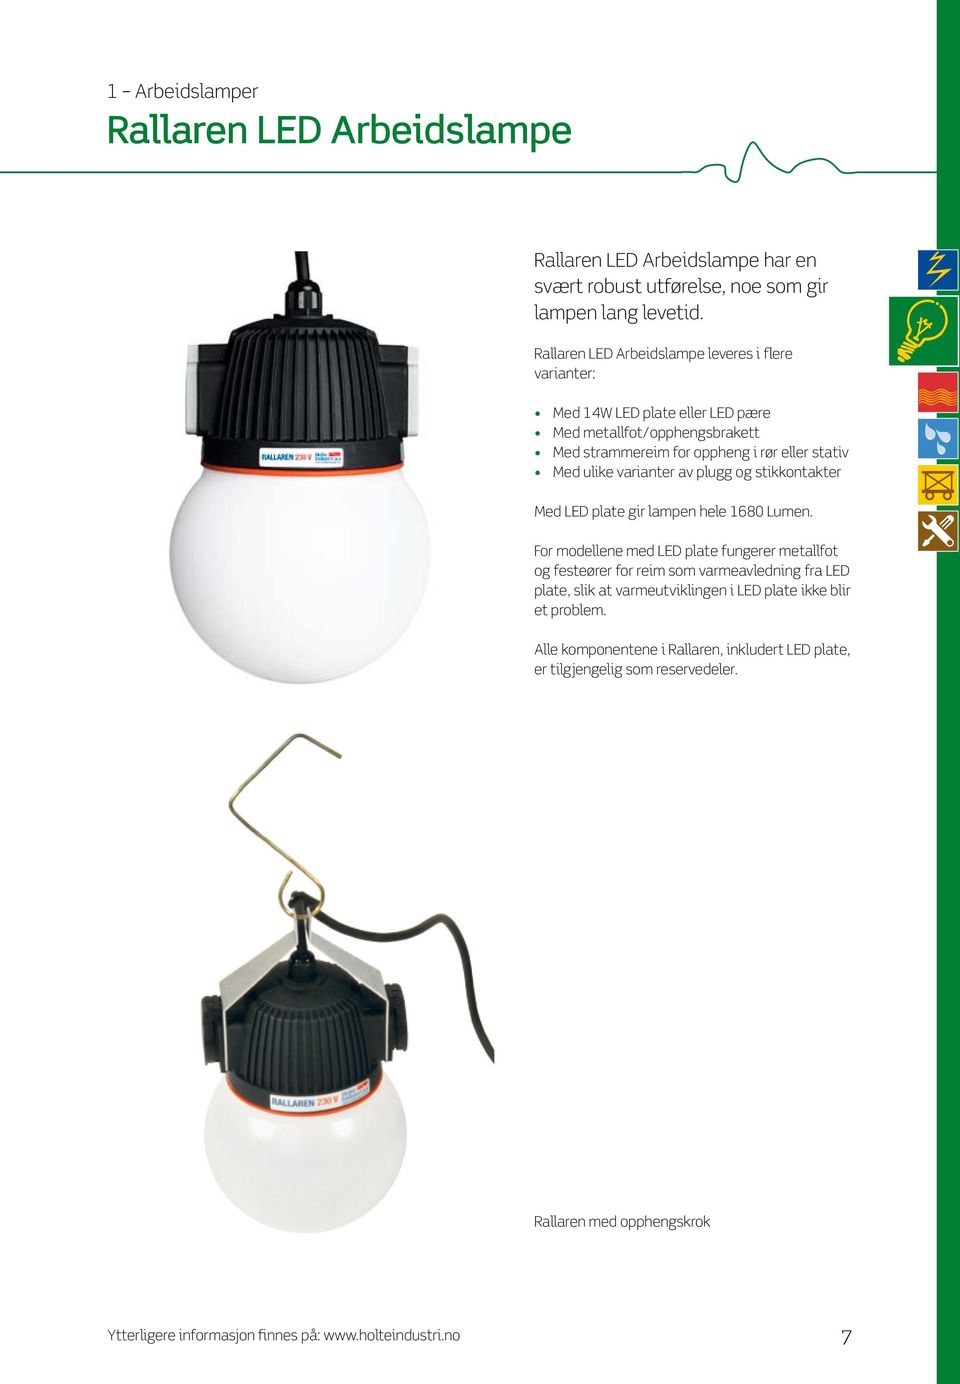 Med ulike varianter av plugg og stikkontakter Med LED plate gir lampen hele 1680 Lumen.